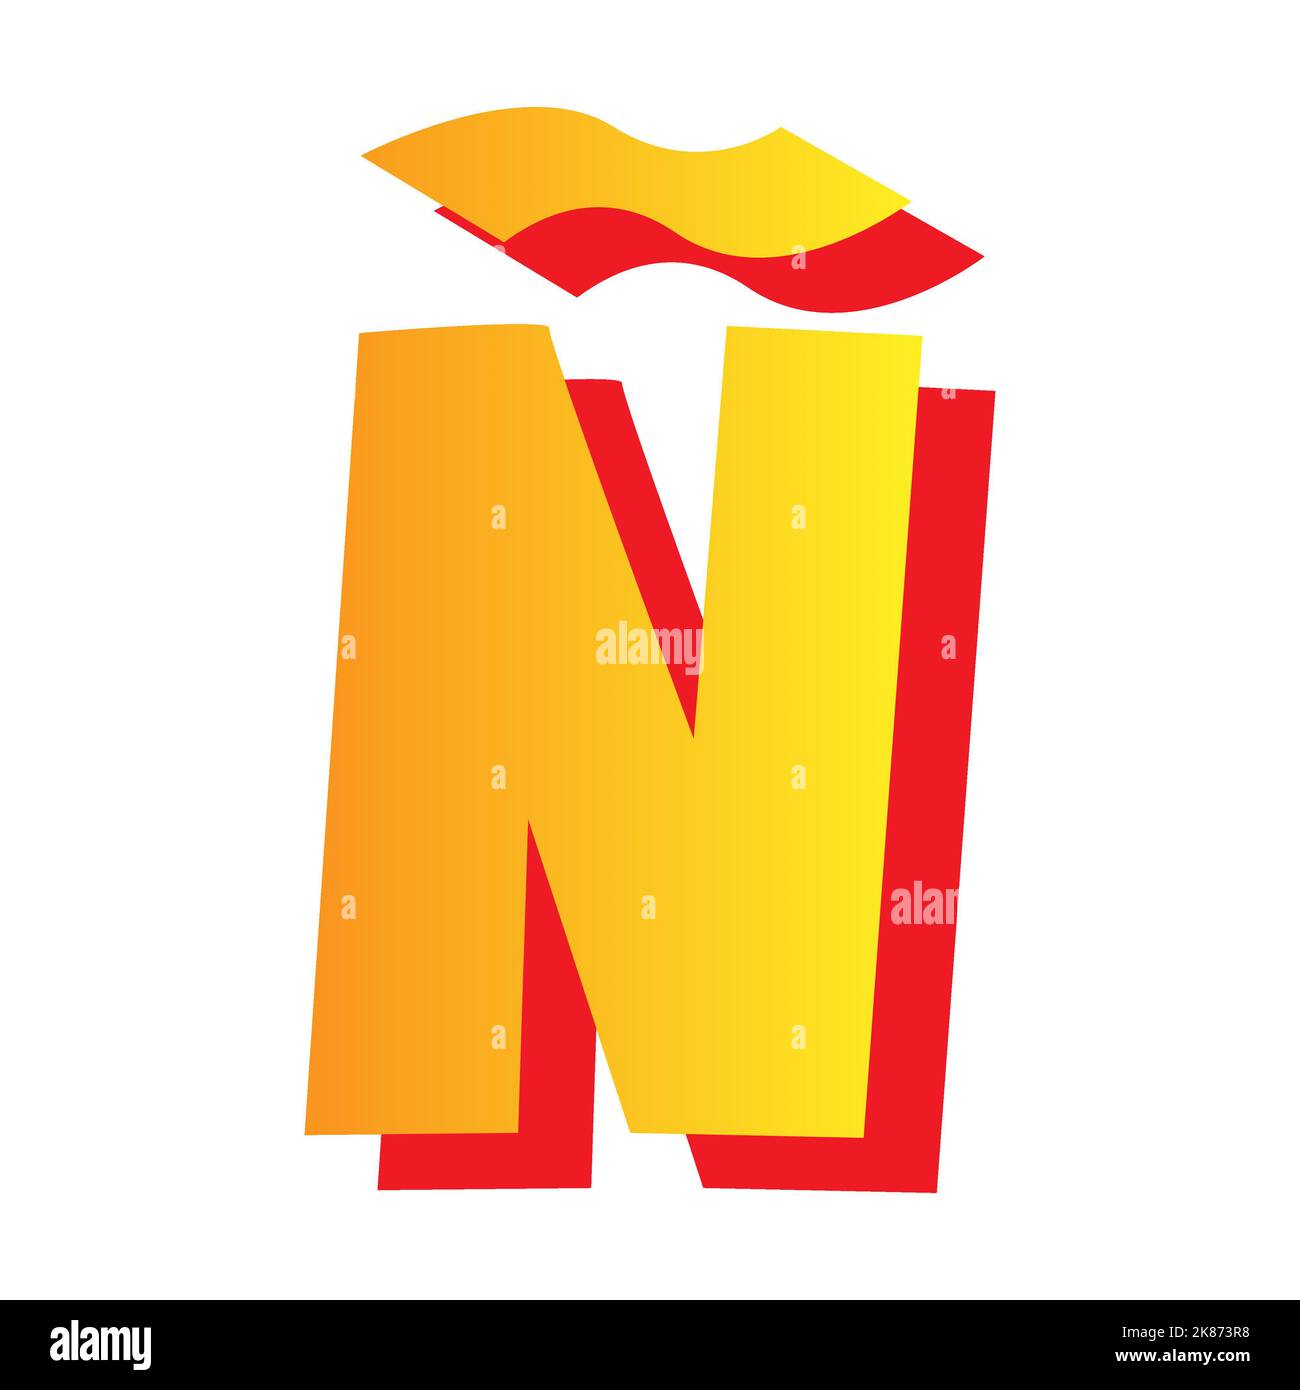 Ñ là một kí tự đặc biệt trong bảng chữ cái Tây Ban Nha, tuy nhỏ bé nhưng rất đặc trưng và quan trọng. Hãy tìm hiểu về kí tự Ñ và những ứng dụng thú vị của nó qua những bức ảnh sống động.